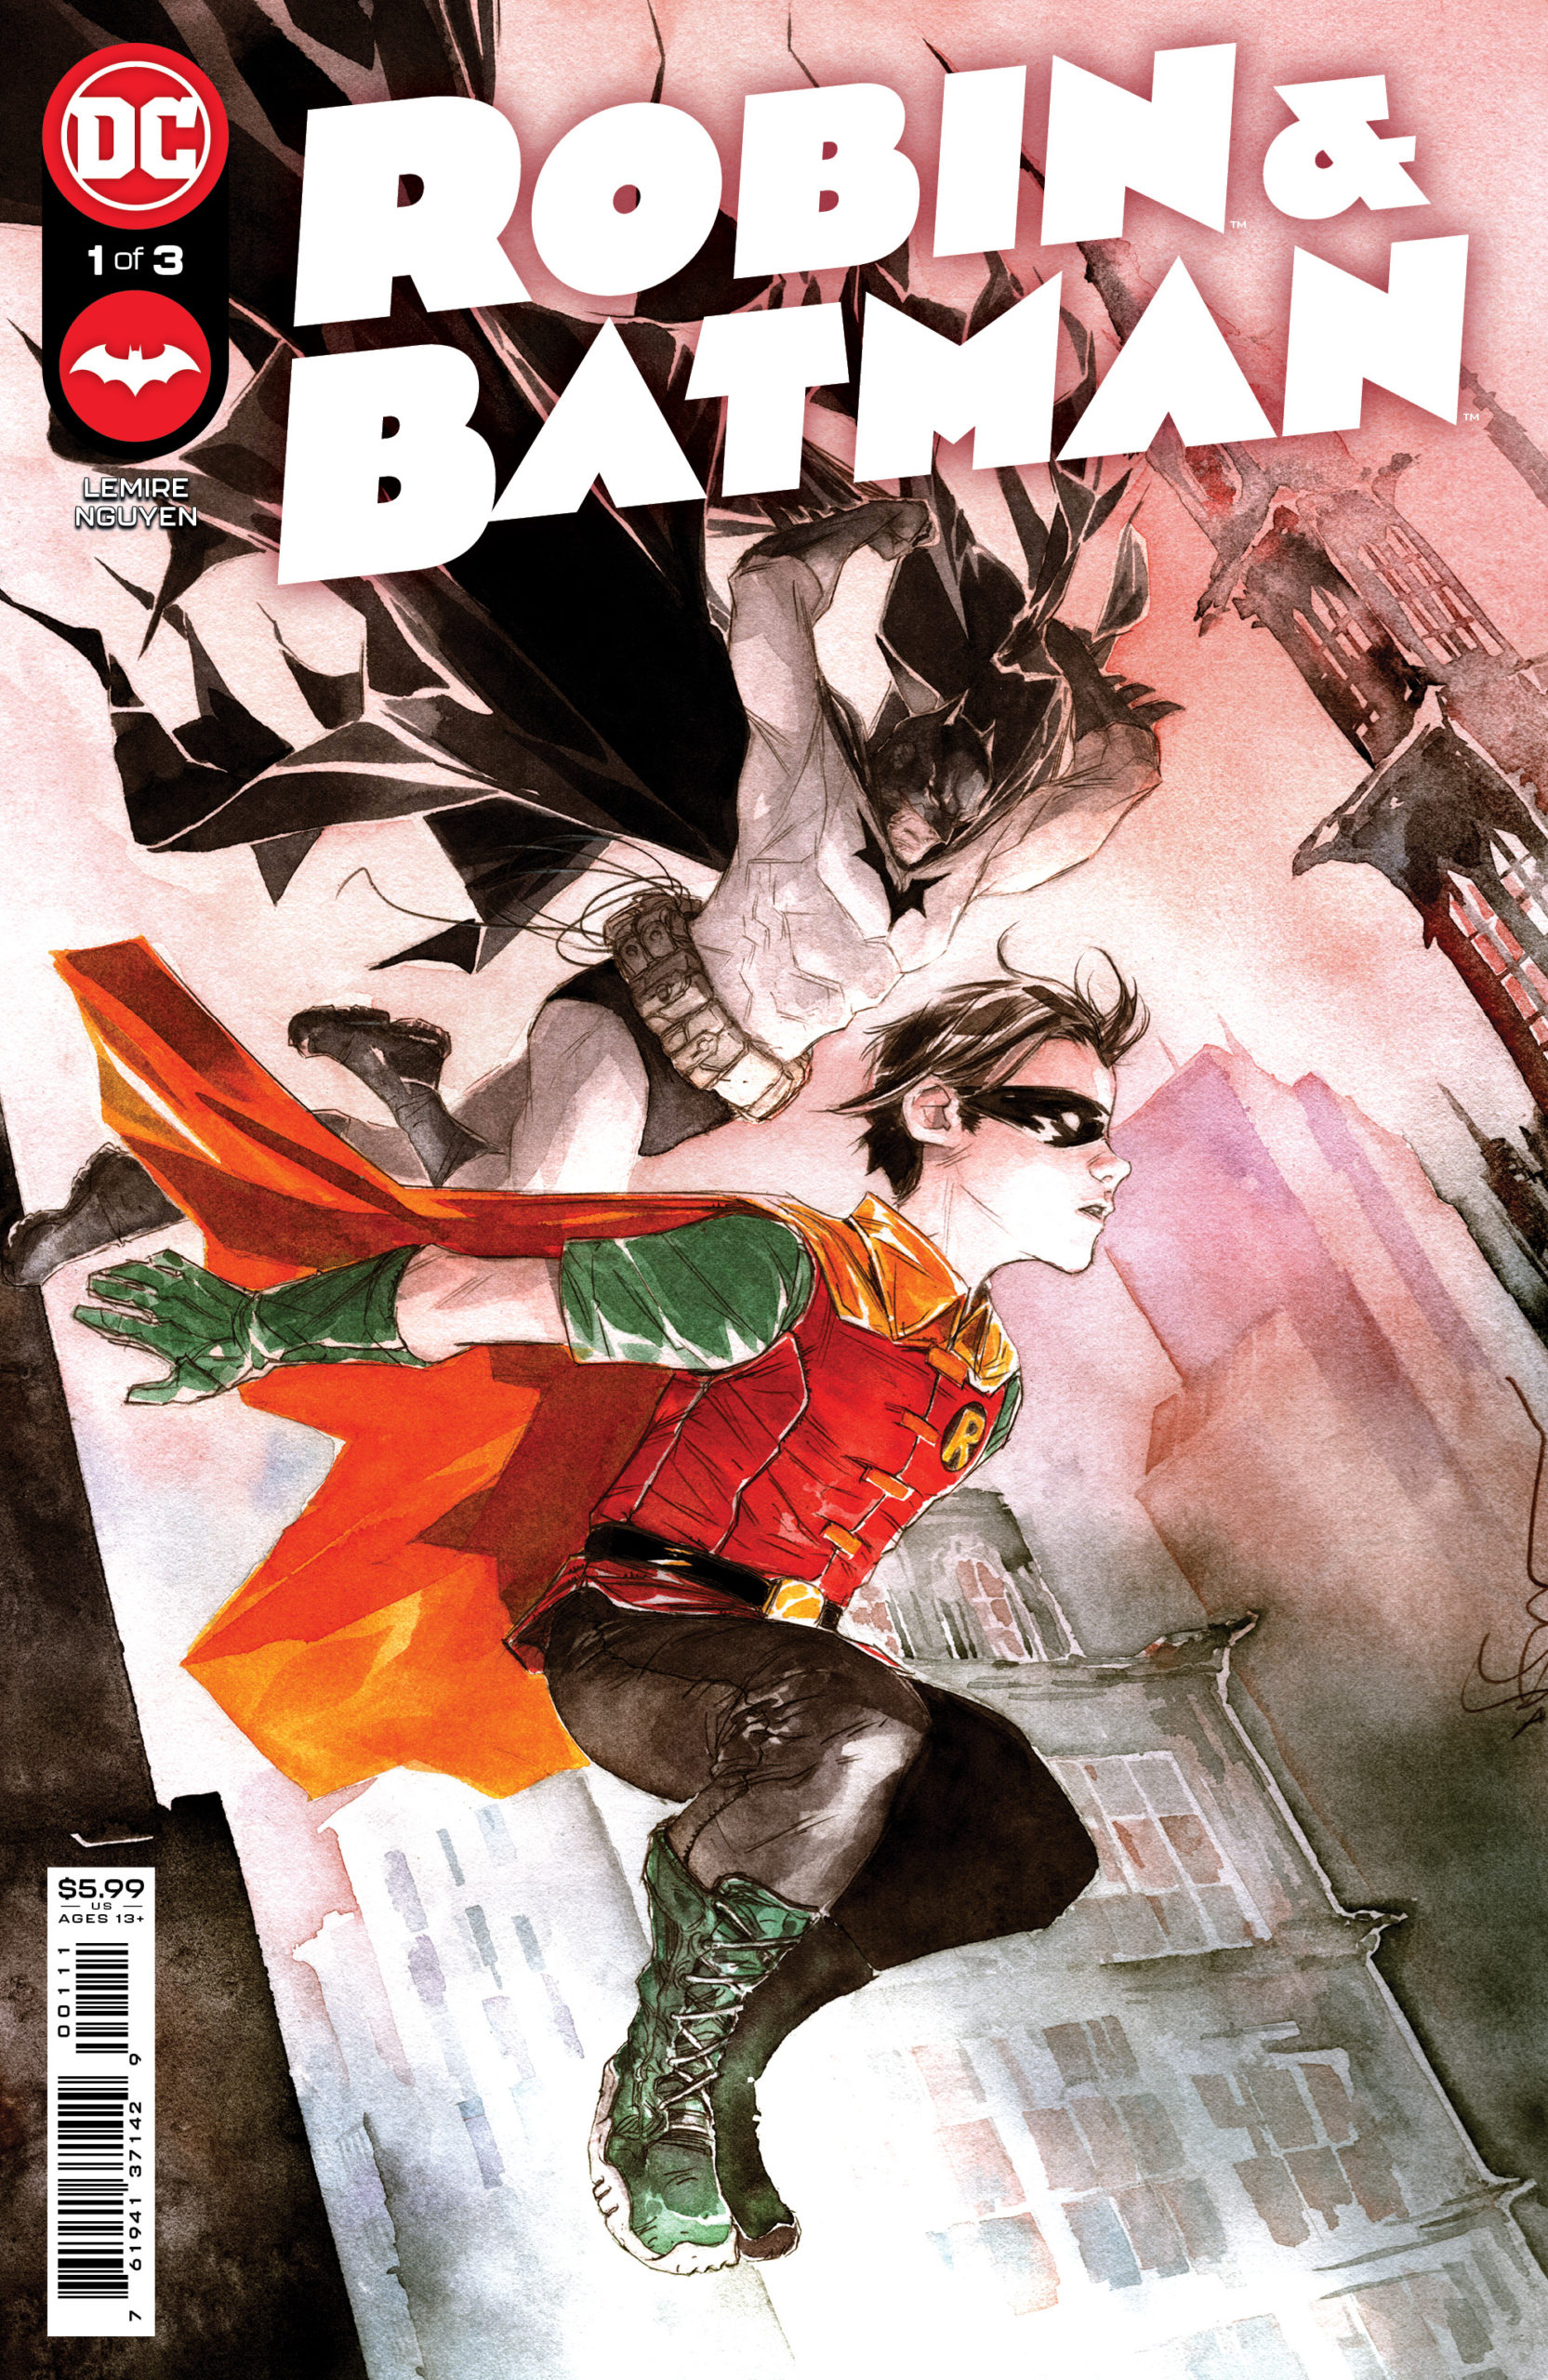 'ROBIN & BATMAN' celebra l'evoluzione dell'alleato di Batman